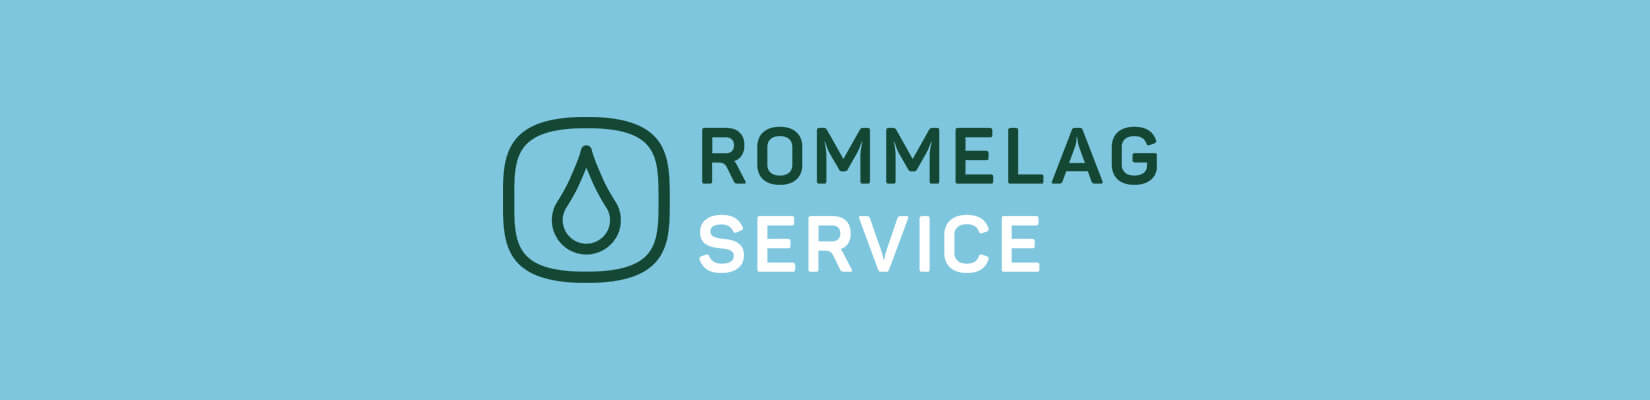 rommelag-service-logo